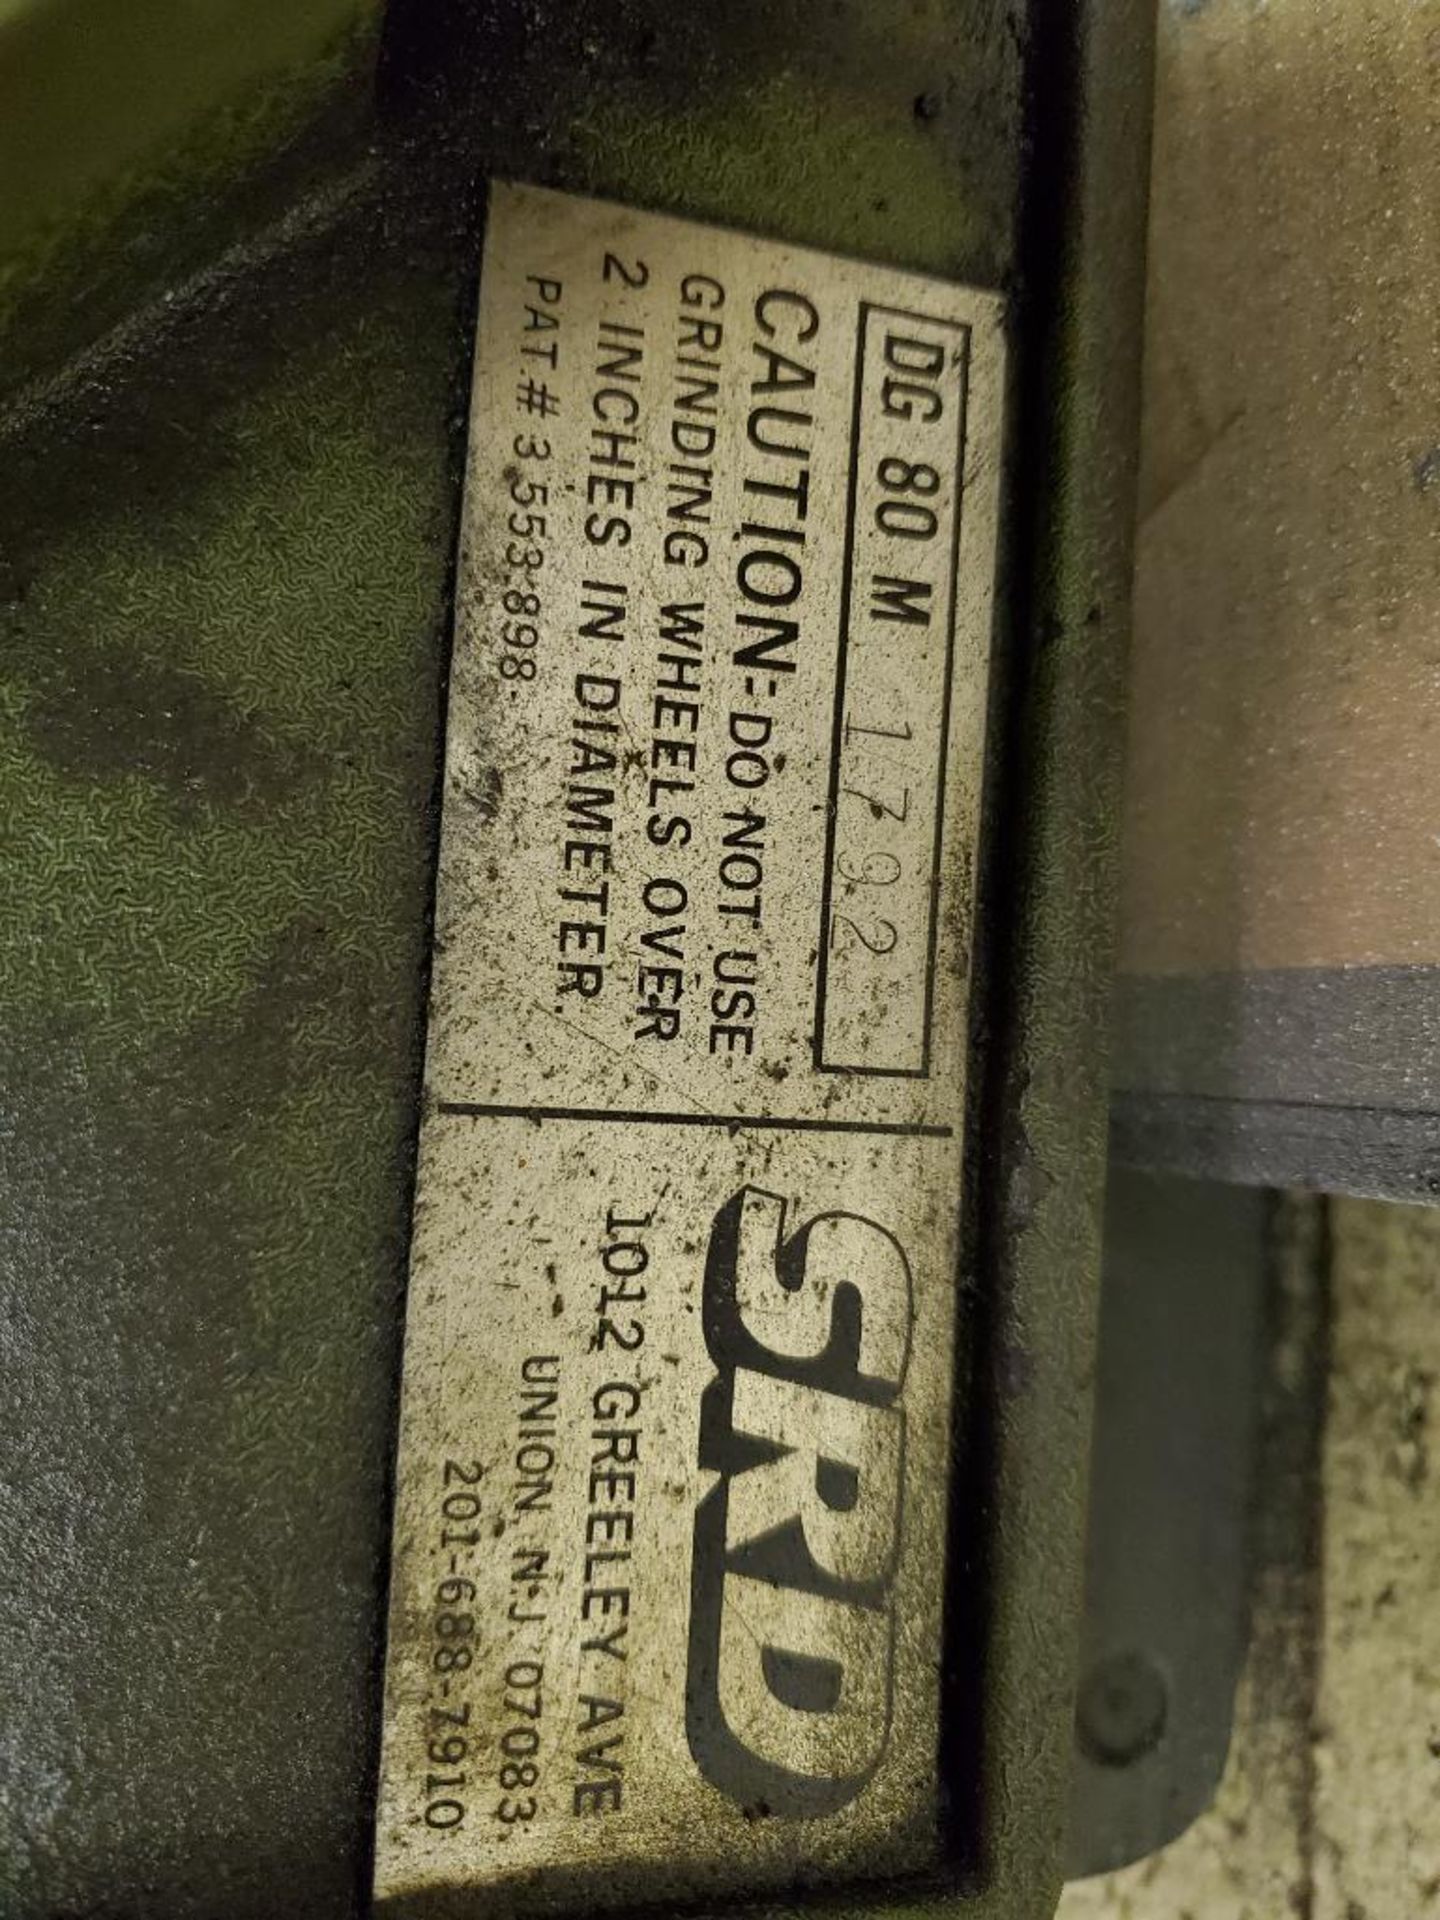 SRD Carbide Drill Grinder, Model DG-80M - Image 6 of 6